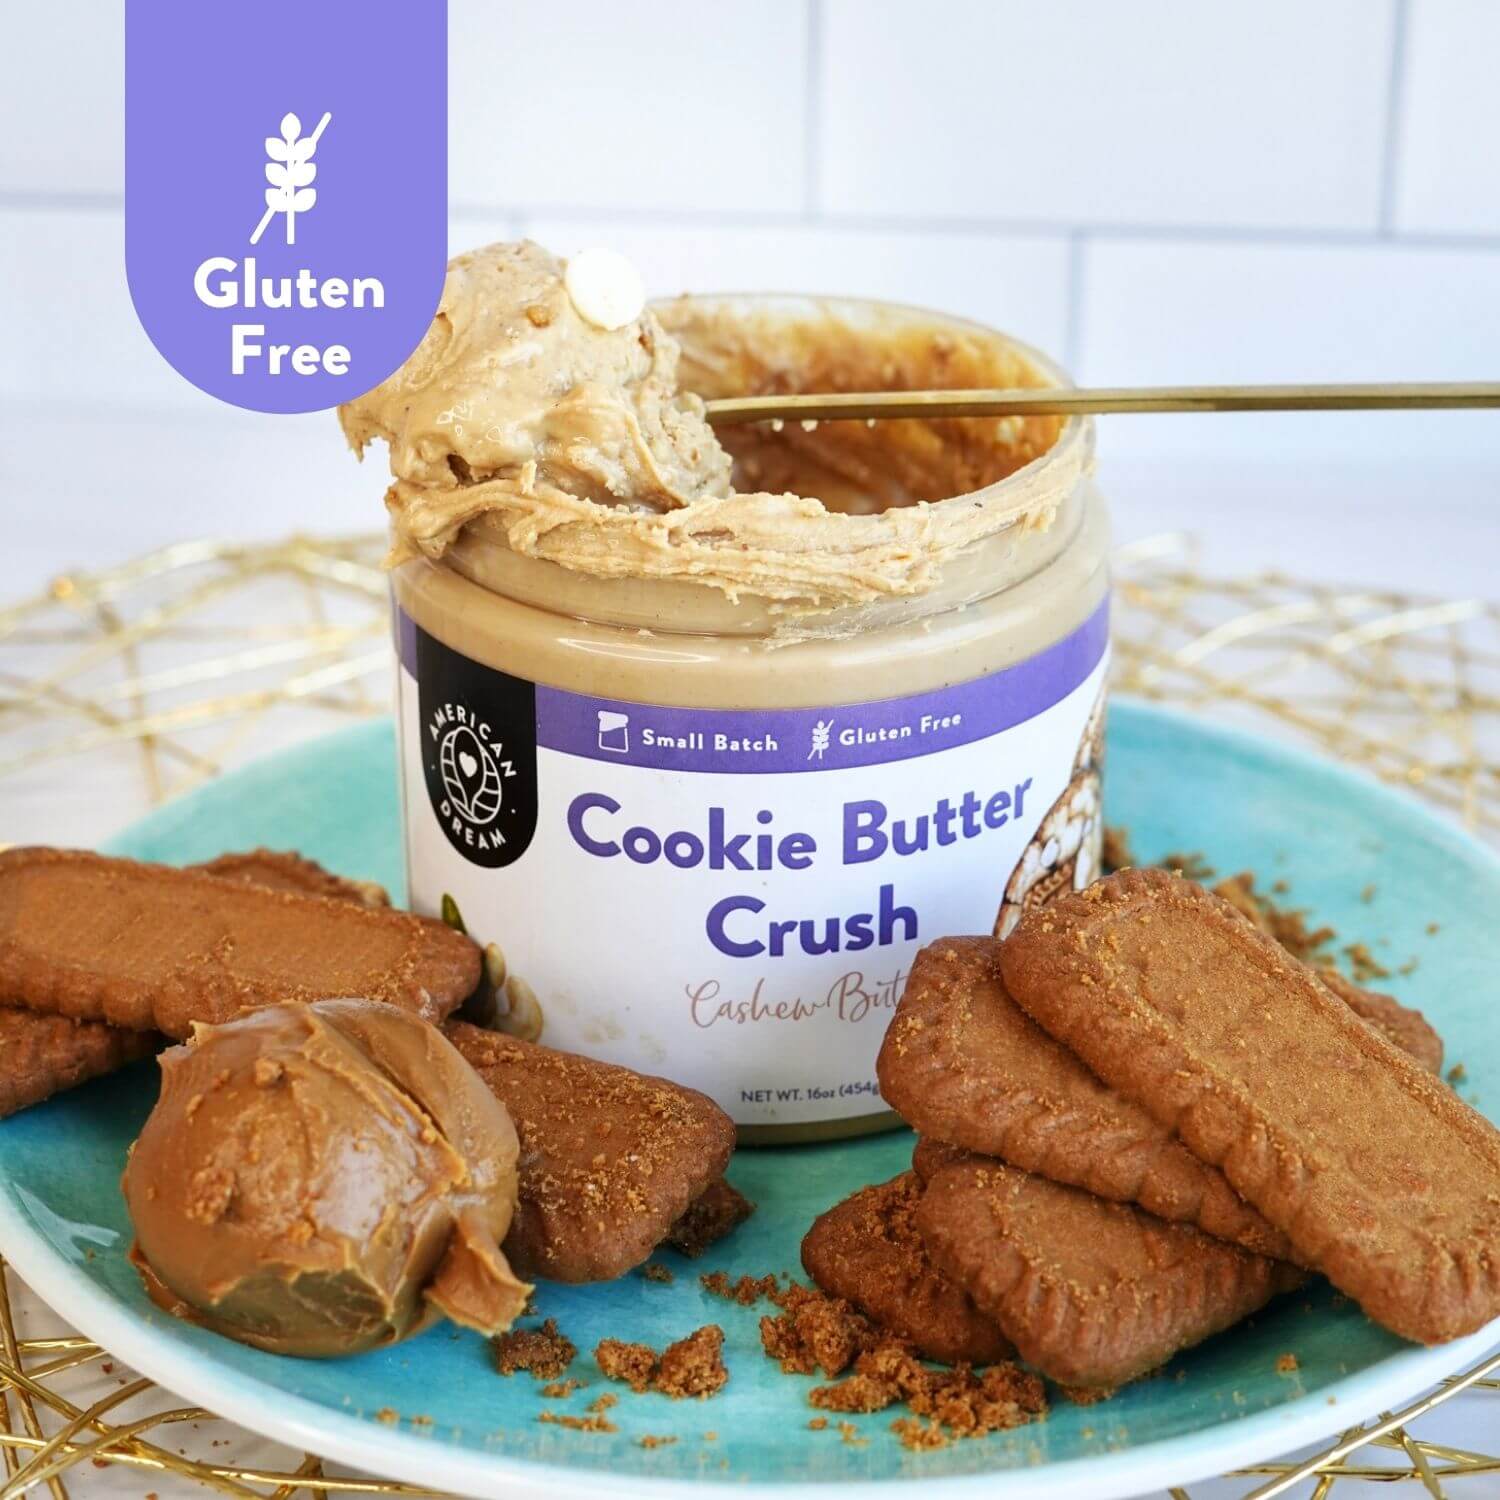 Gluten-Free Cookie Butter Crush Cashew Butter